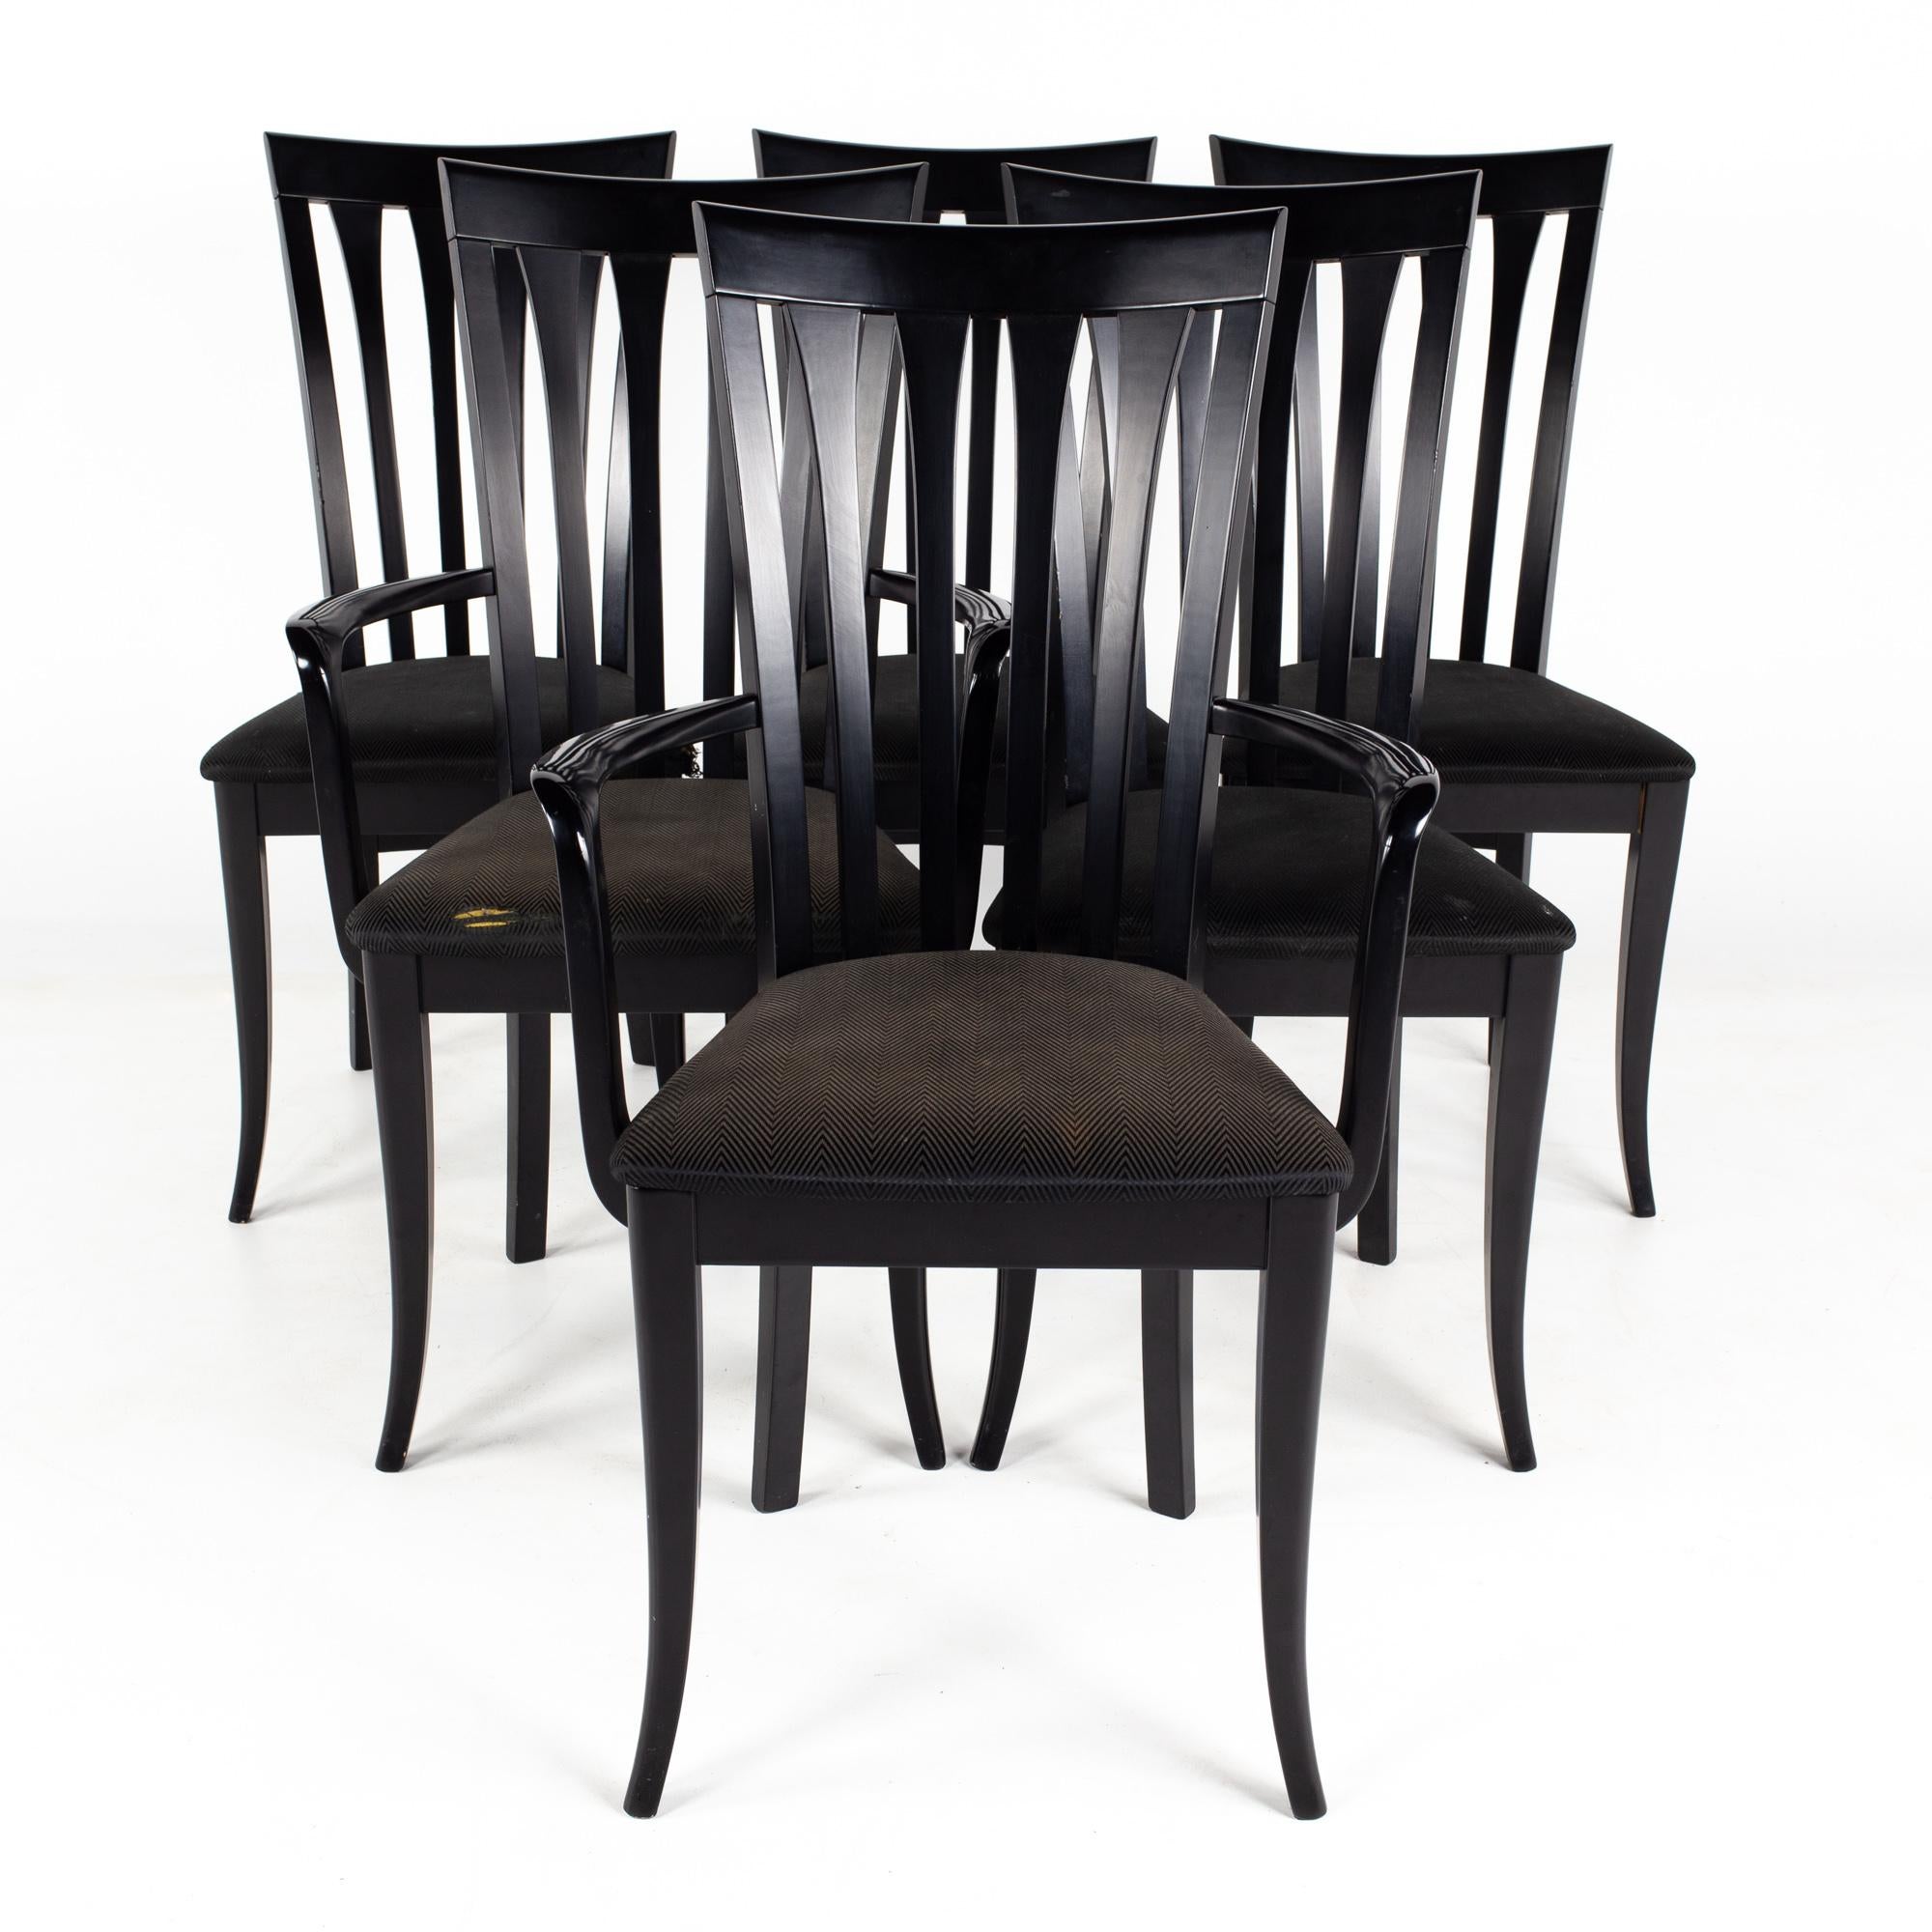 A Sibau Italienische schwarze Stühle mit hoher Rückenlehne - Satz von 6

Jeder Stuhl misst: 18,5 breit x 20,5 tief x 38,5 Zoll hoch, mit einer Sitzhöhe von 18 und Armhöhe von 26,5 Zoll

Über Fotos: Wir machen unsere Fotos in einem Studio mit